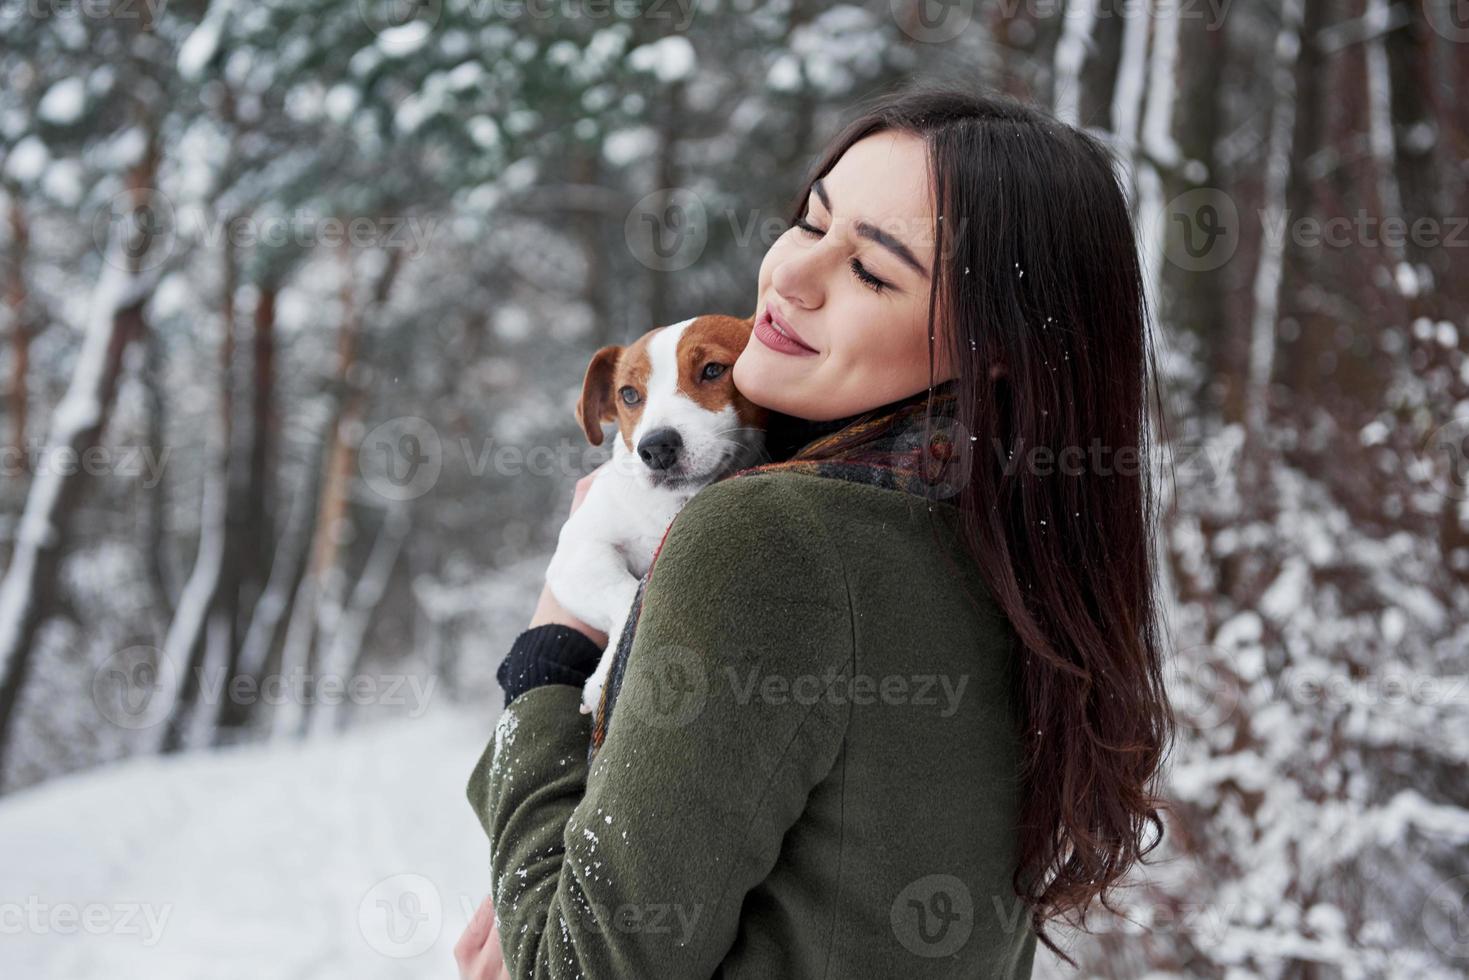 mirada satisfecha. morena sonriente divirtiéndose mientras camina con su perro en el parque de invierno foto